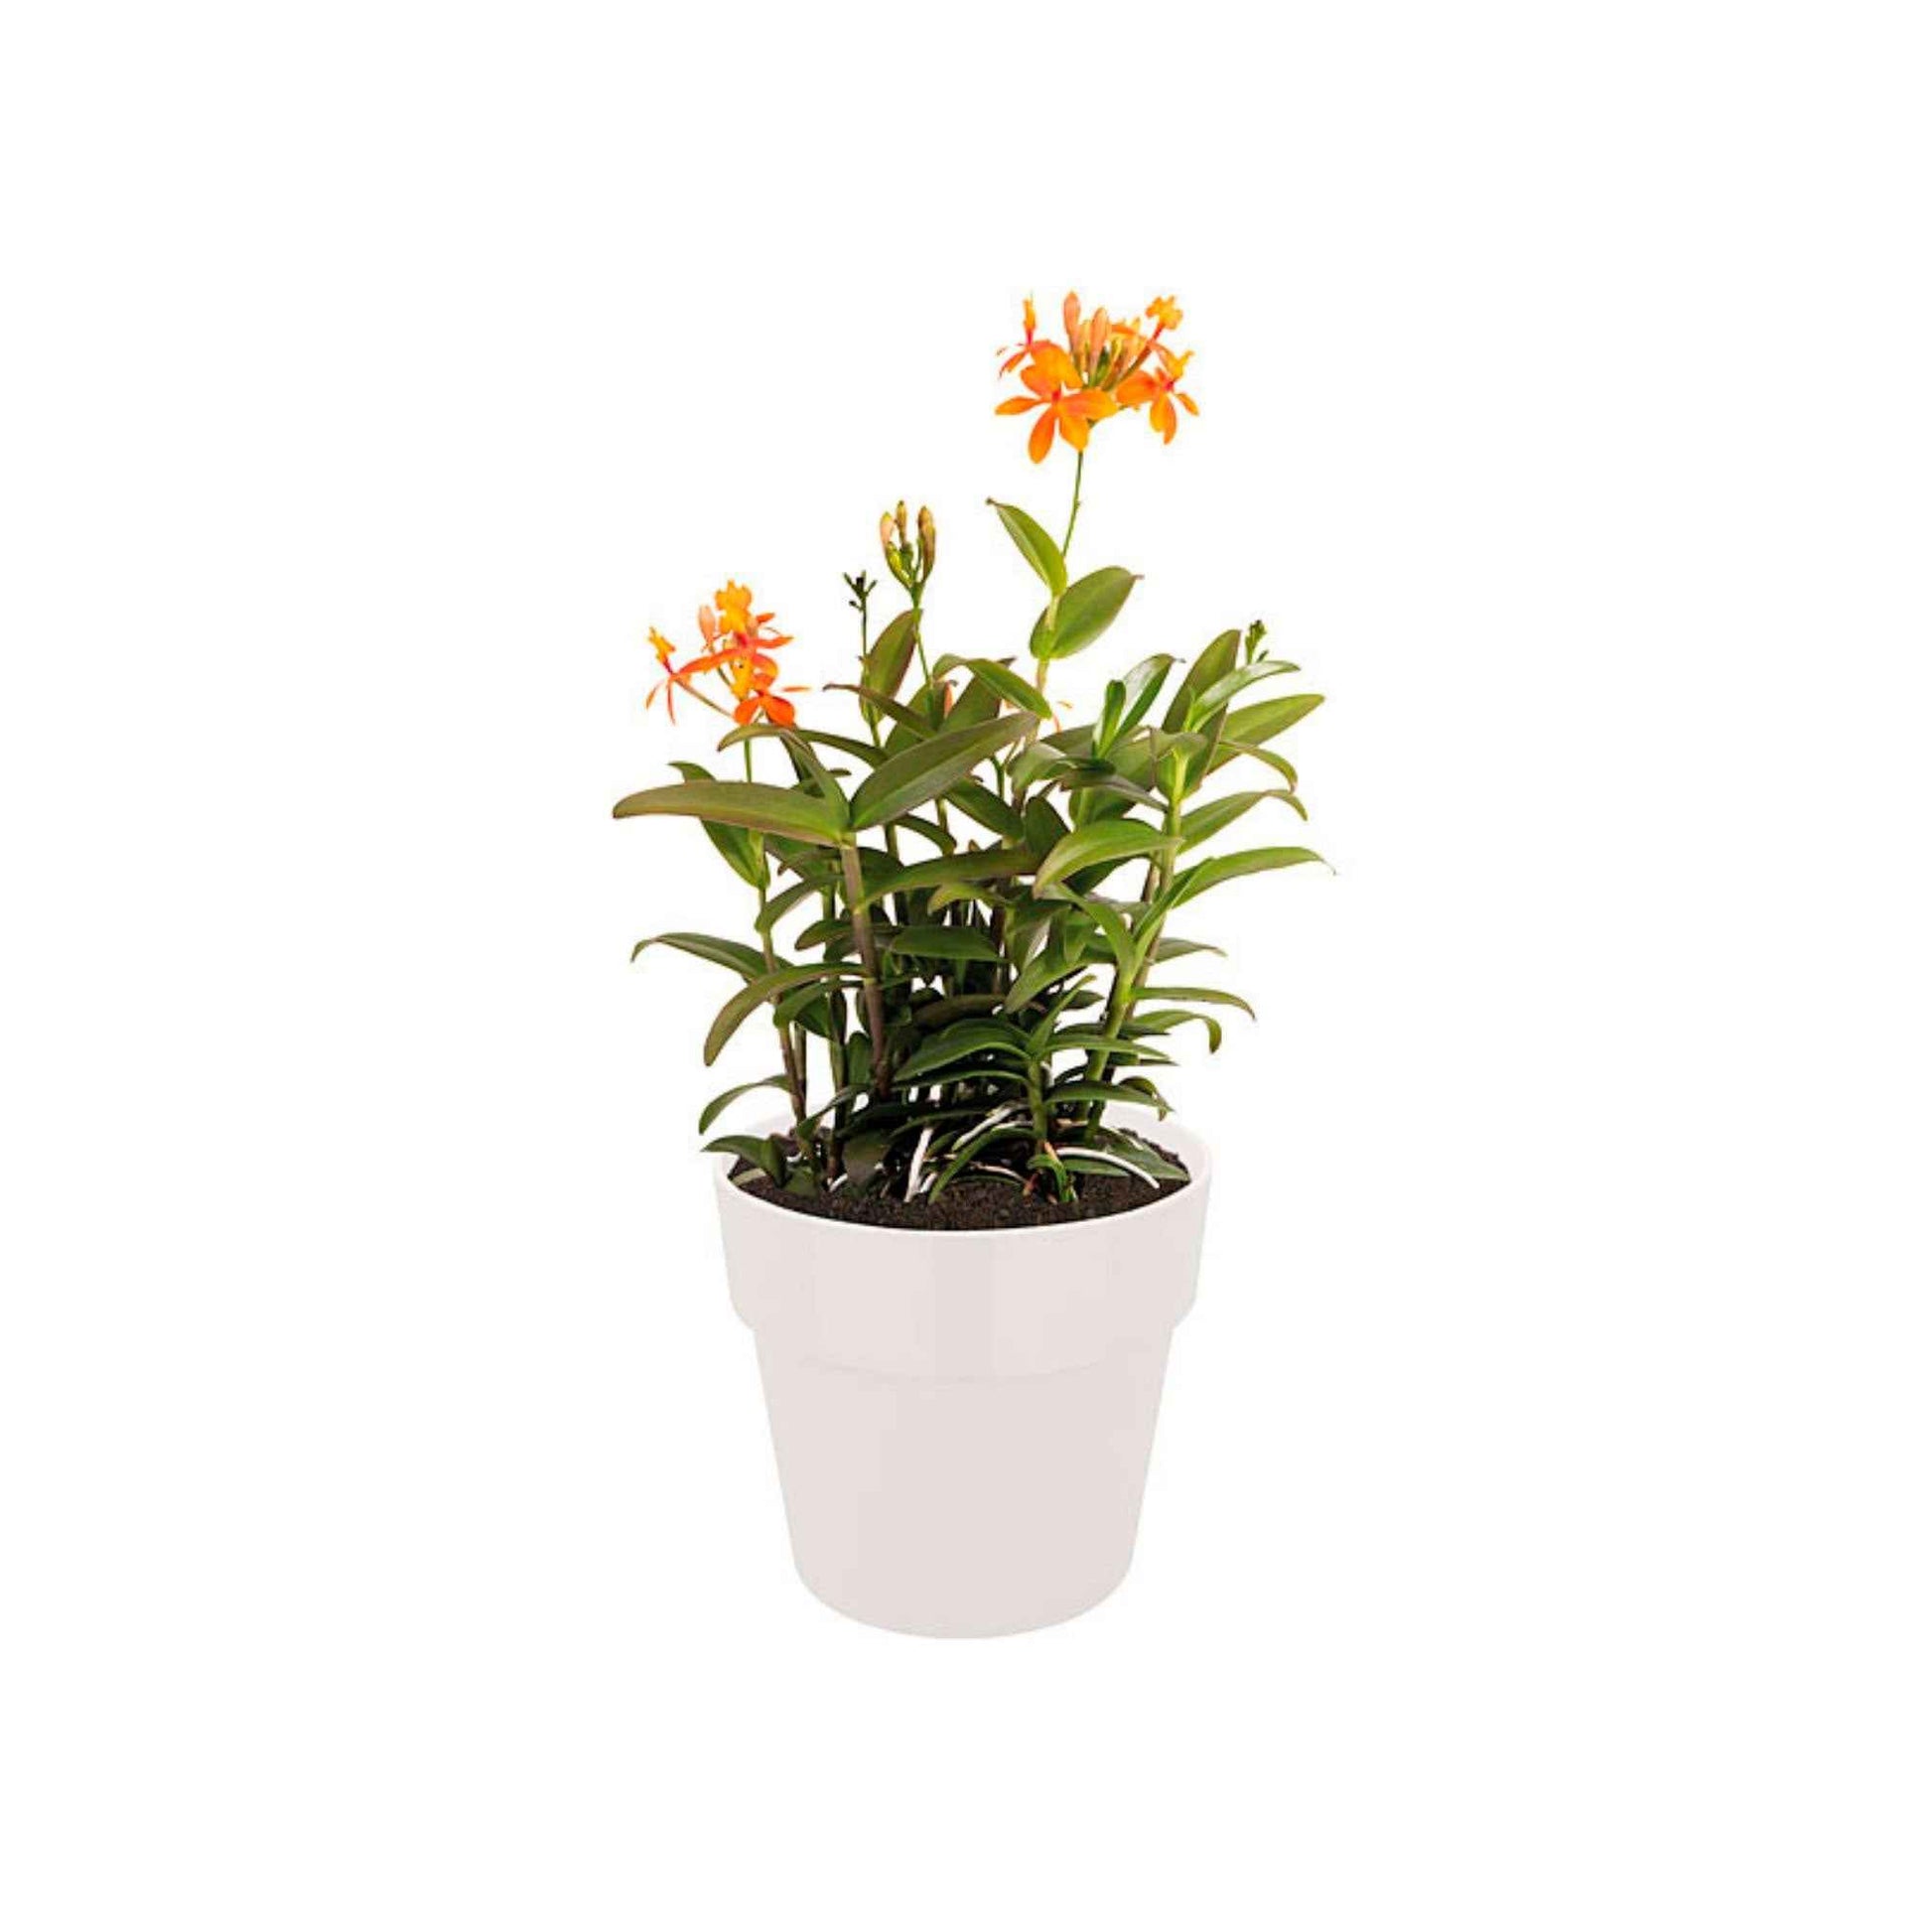 Elho pot de fleurs b.for original rond blanc - Pot pour l'intérieur - Pots de fleurs